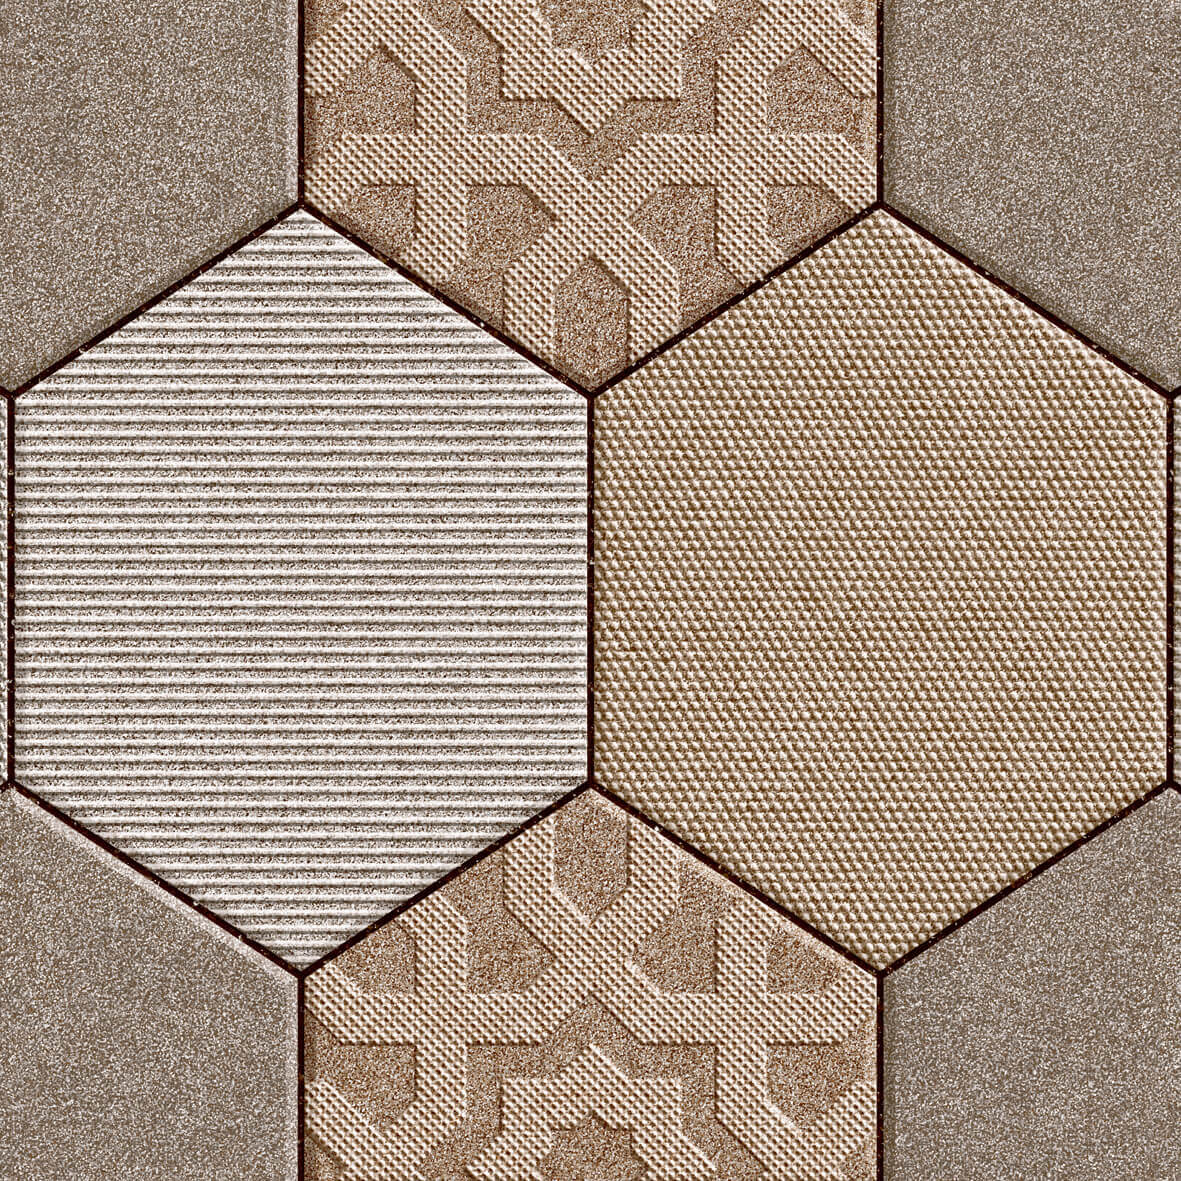 Pattern Tiles for Automotive Tiles